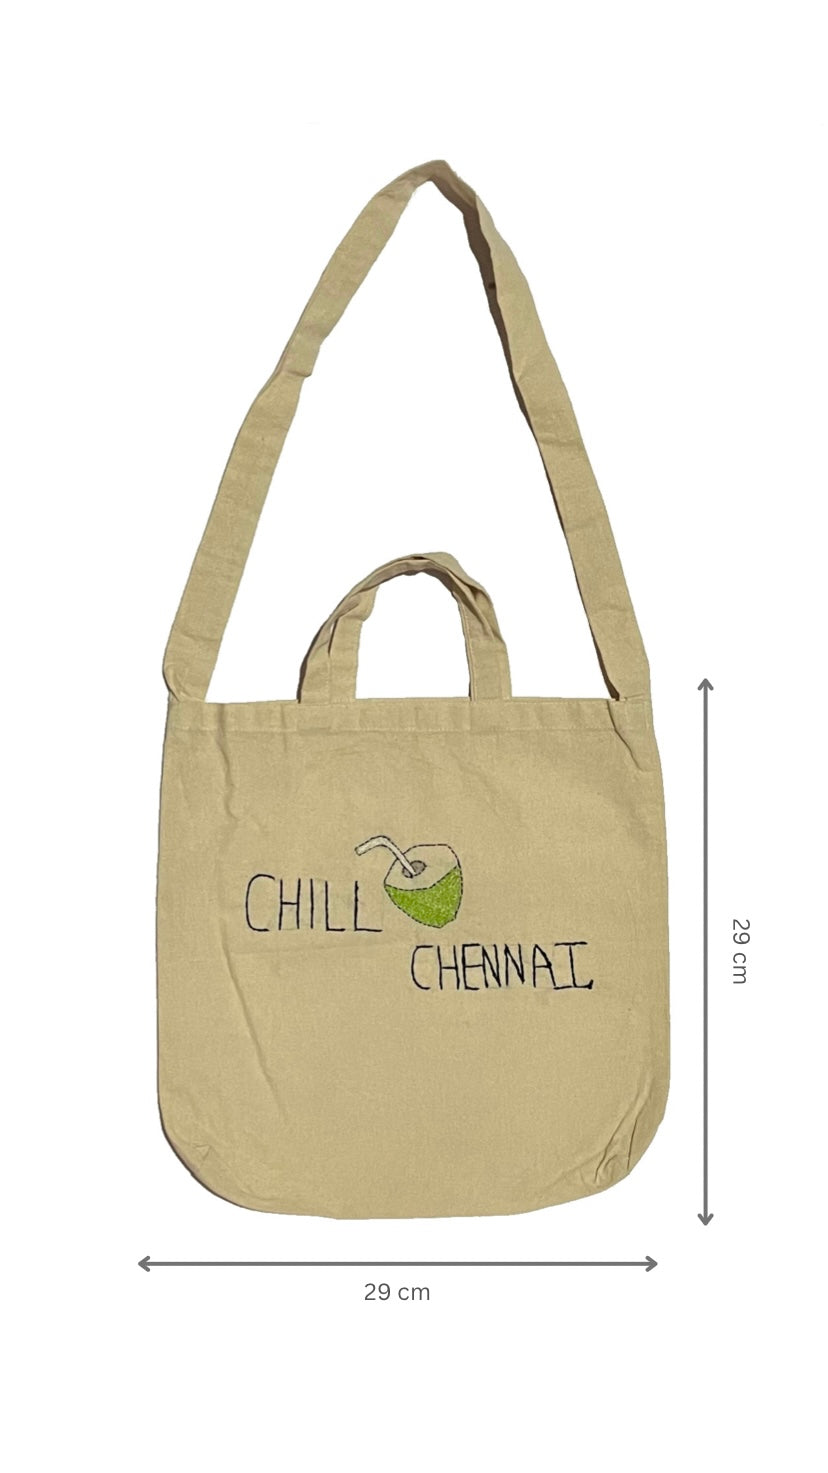 Chill Chennai ( hand stich tote bag)